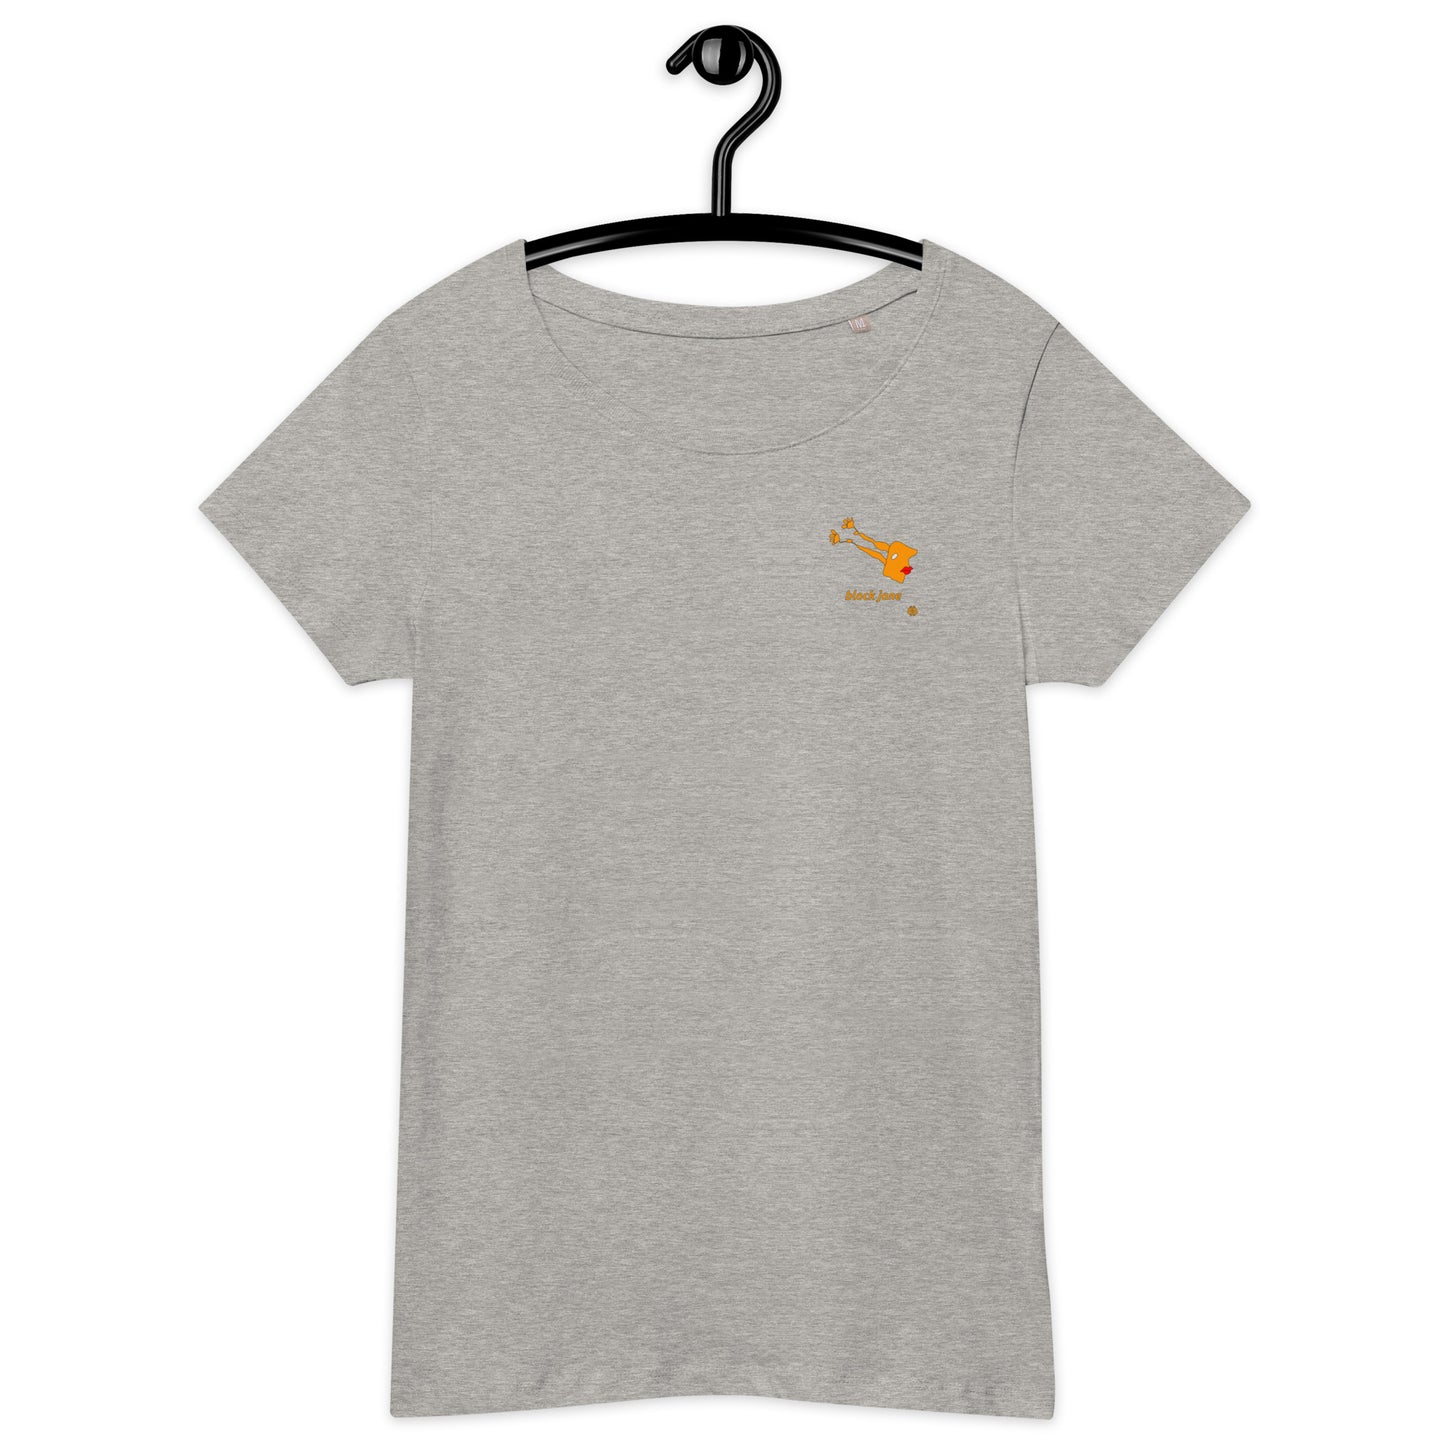 Women’s wide neck short sleeve organic t-shirt "BlockJane_sm"